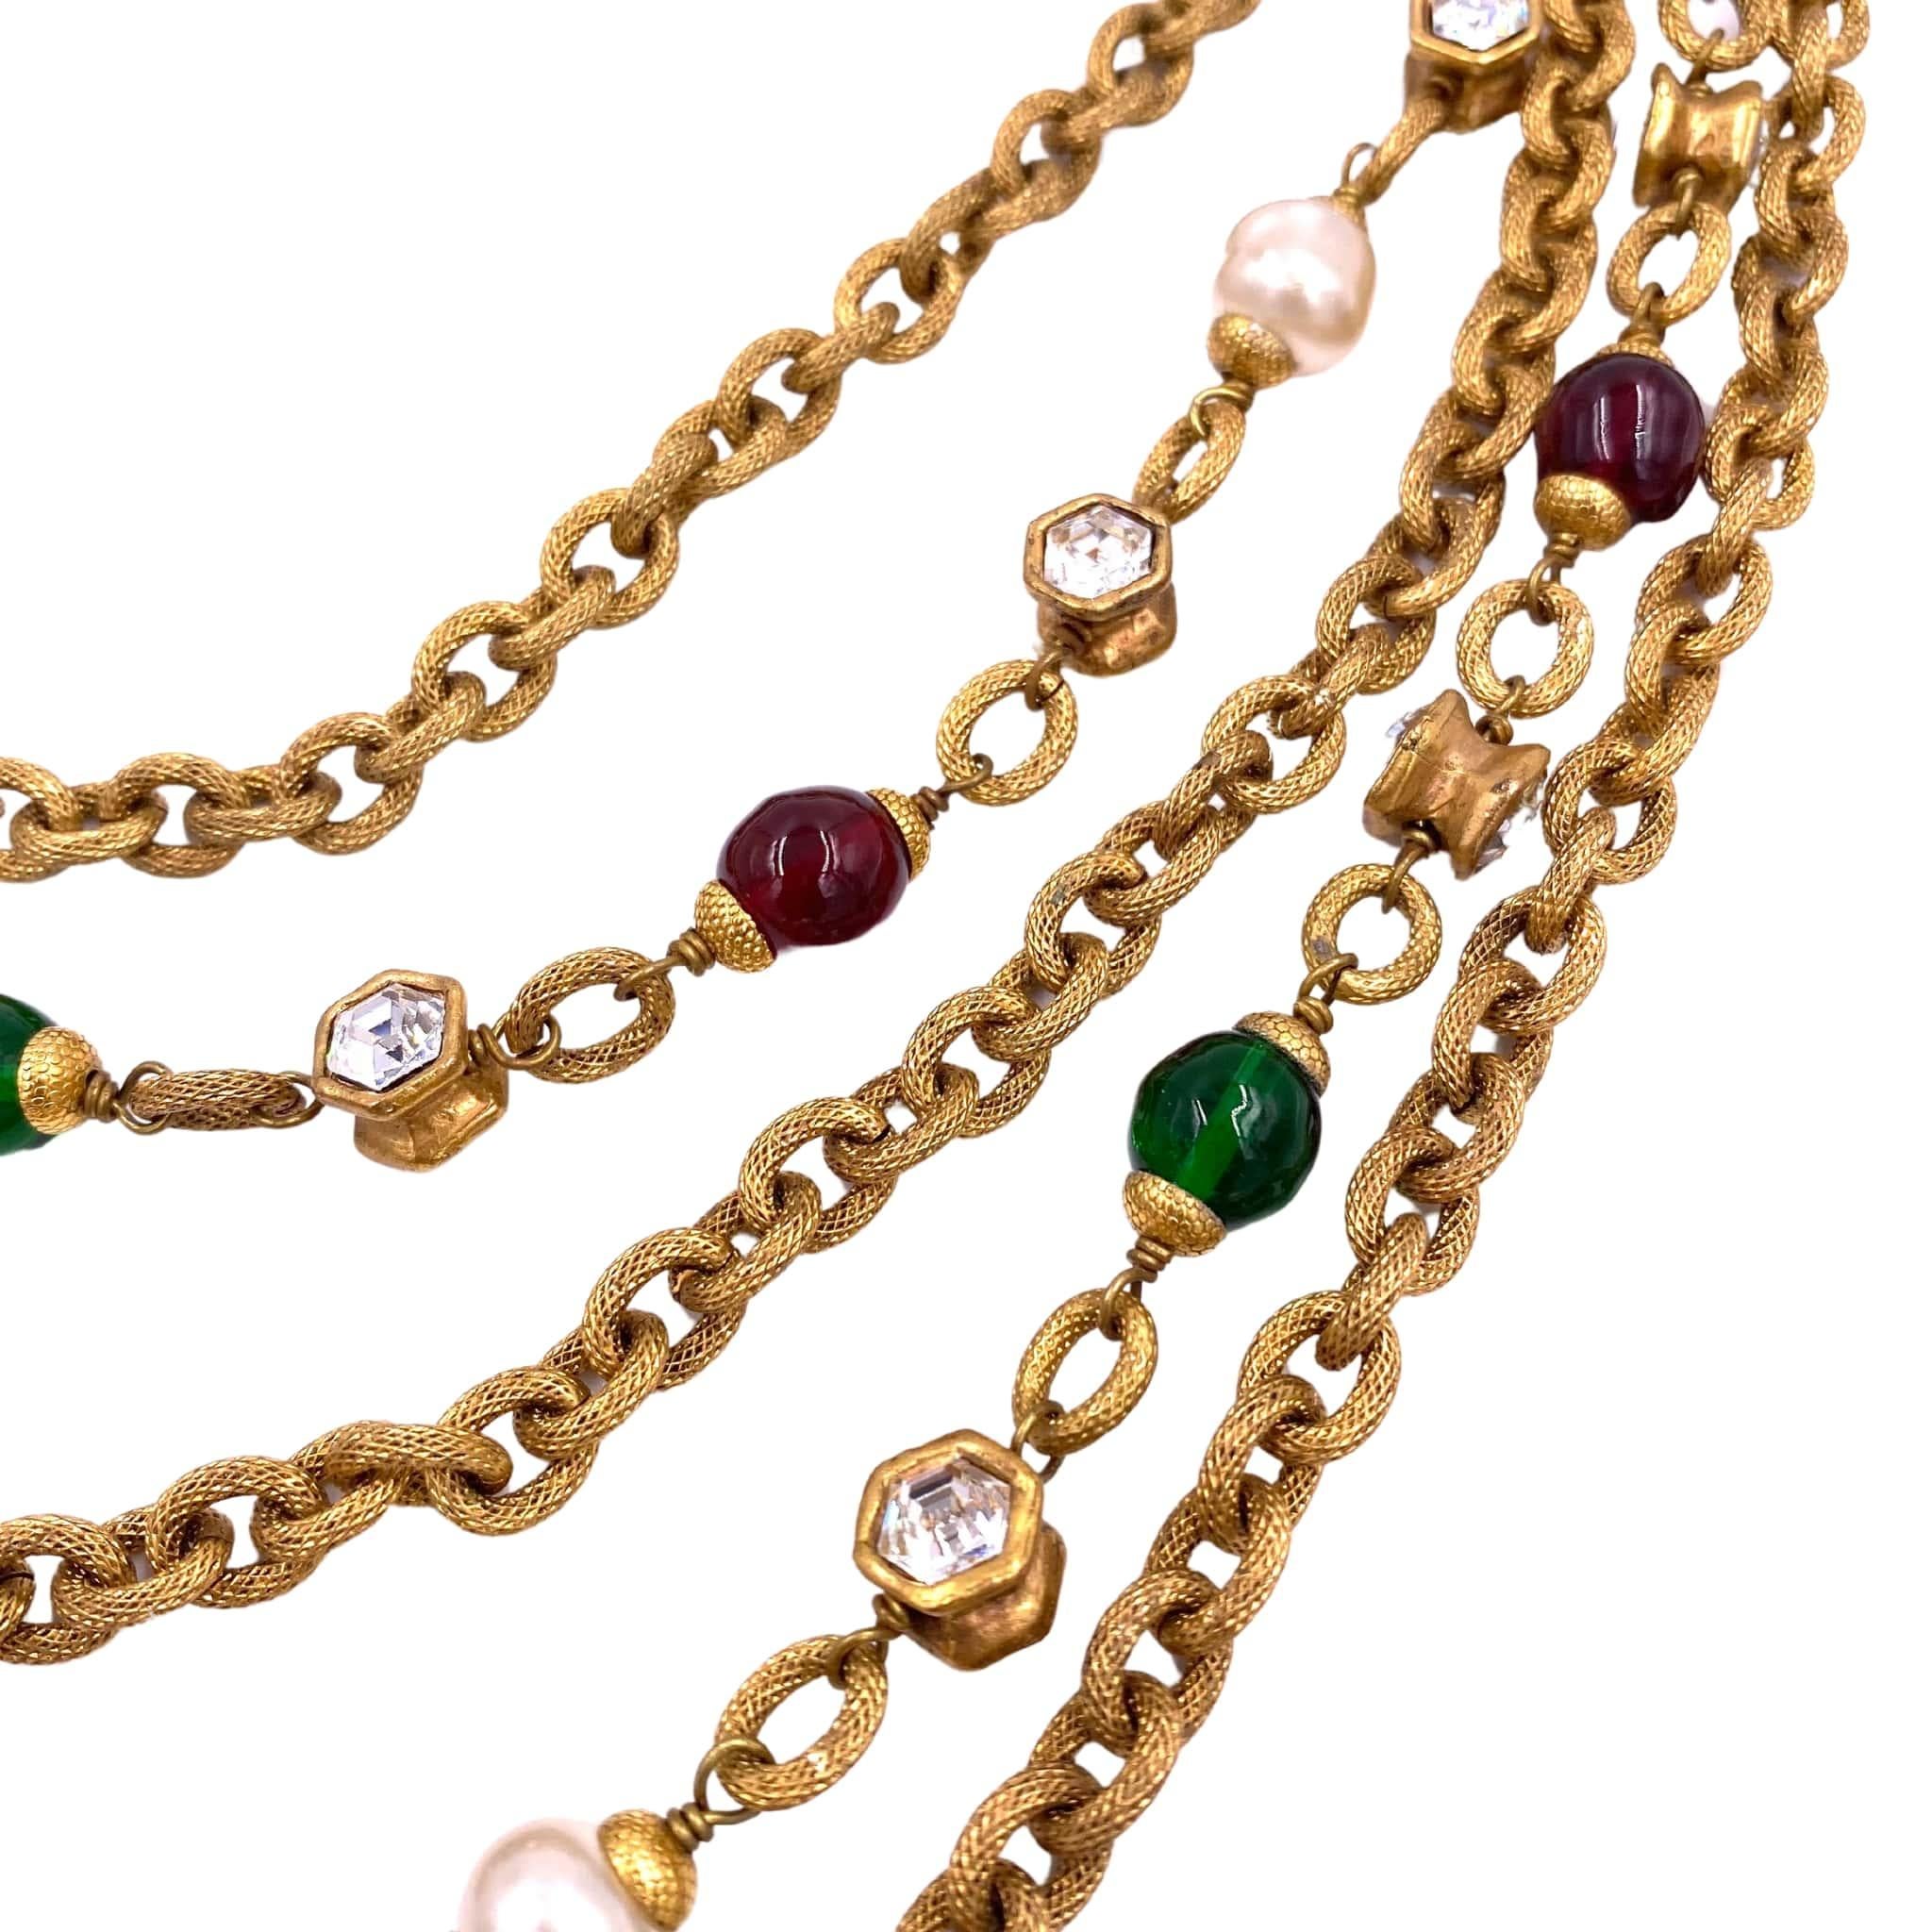 Faites l'expérience de l'élégance intemporelle avec le collier à chaînes multiples Chanel 1984. Composé de plusieurs couches de pierres vertes et violettes, ce collier ajoute une touche de sophistication à toutes les tenues. Rehaussez votre style et